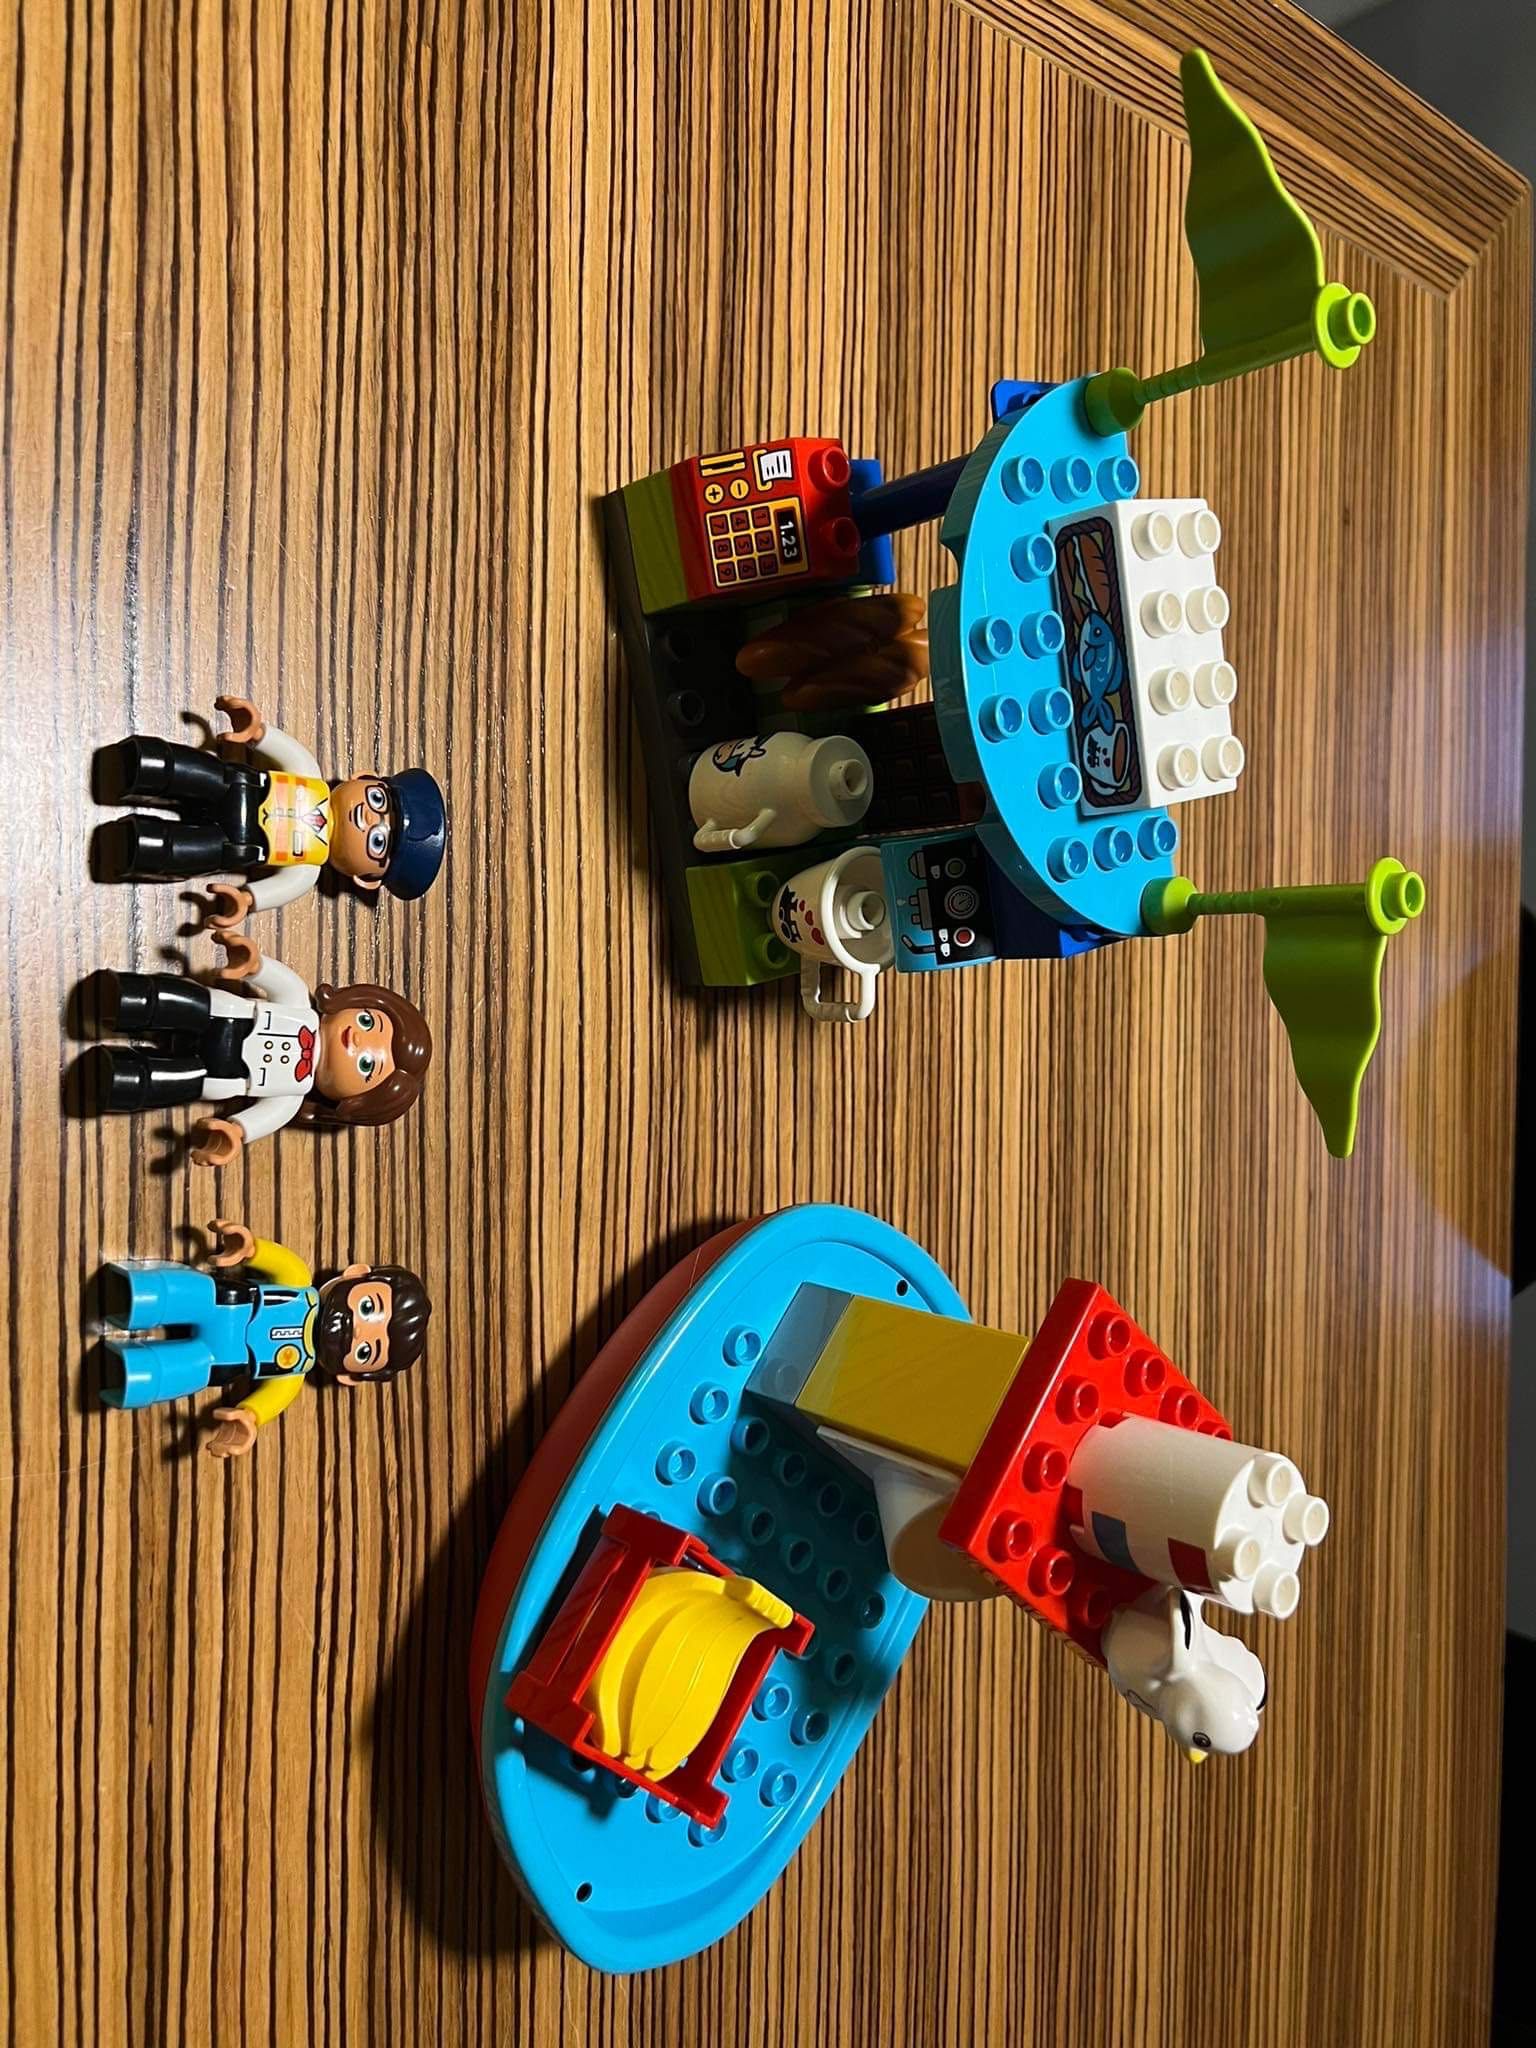 Pociąg towarowy i osobowy Lego Duplo